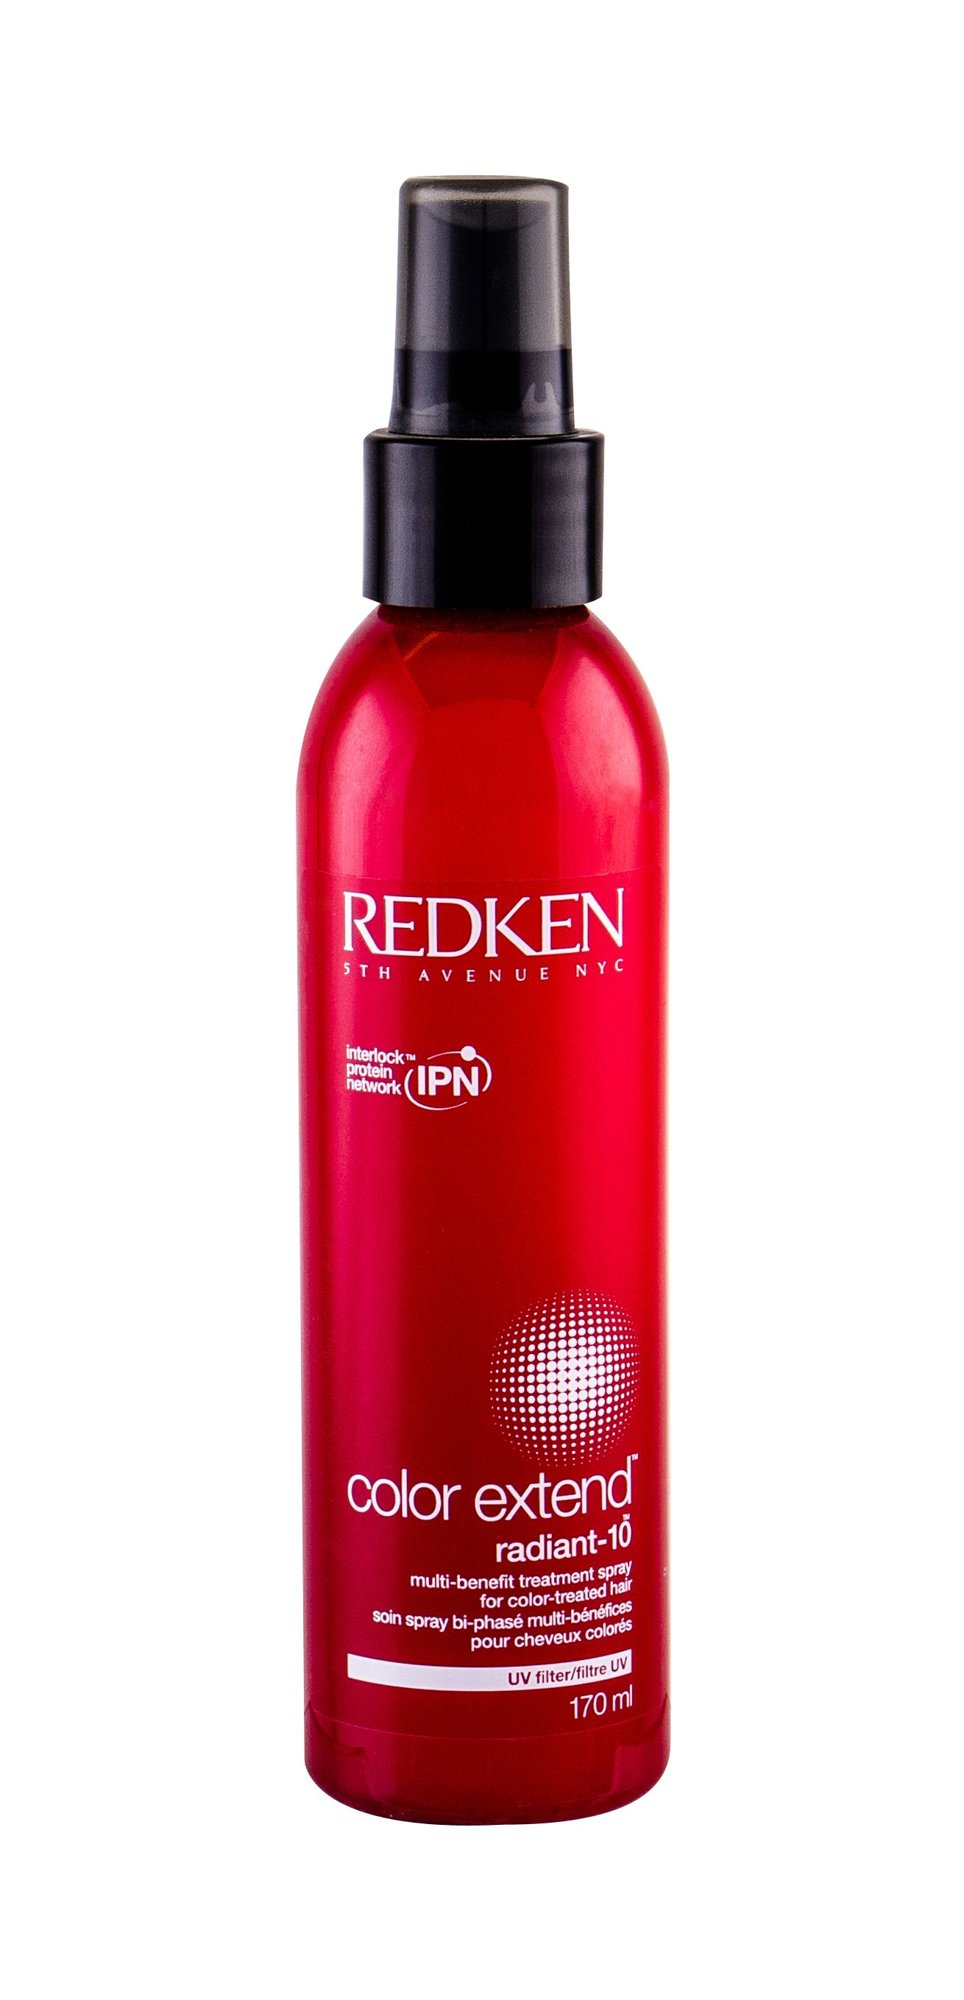 Redken Color Extend Radiant-10 kondicionierius